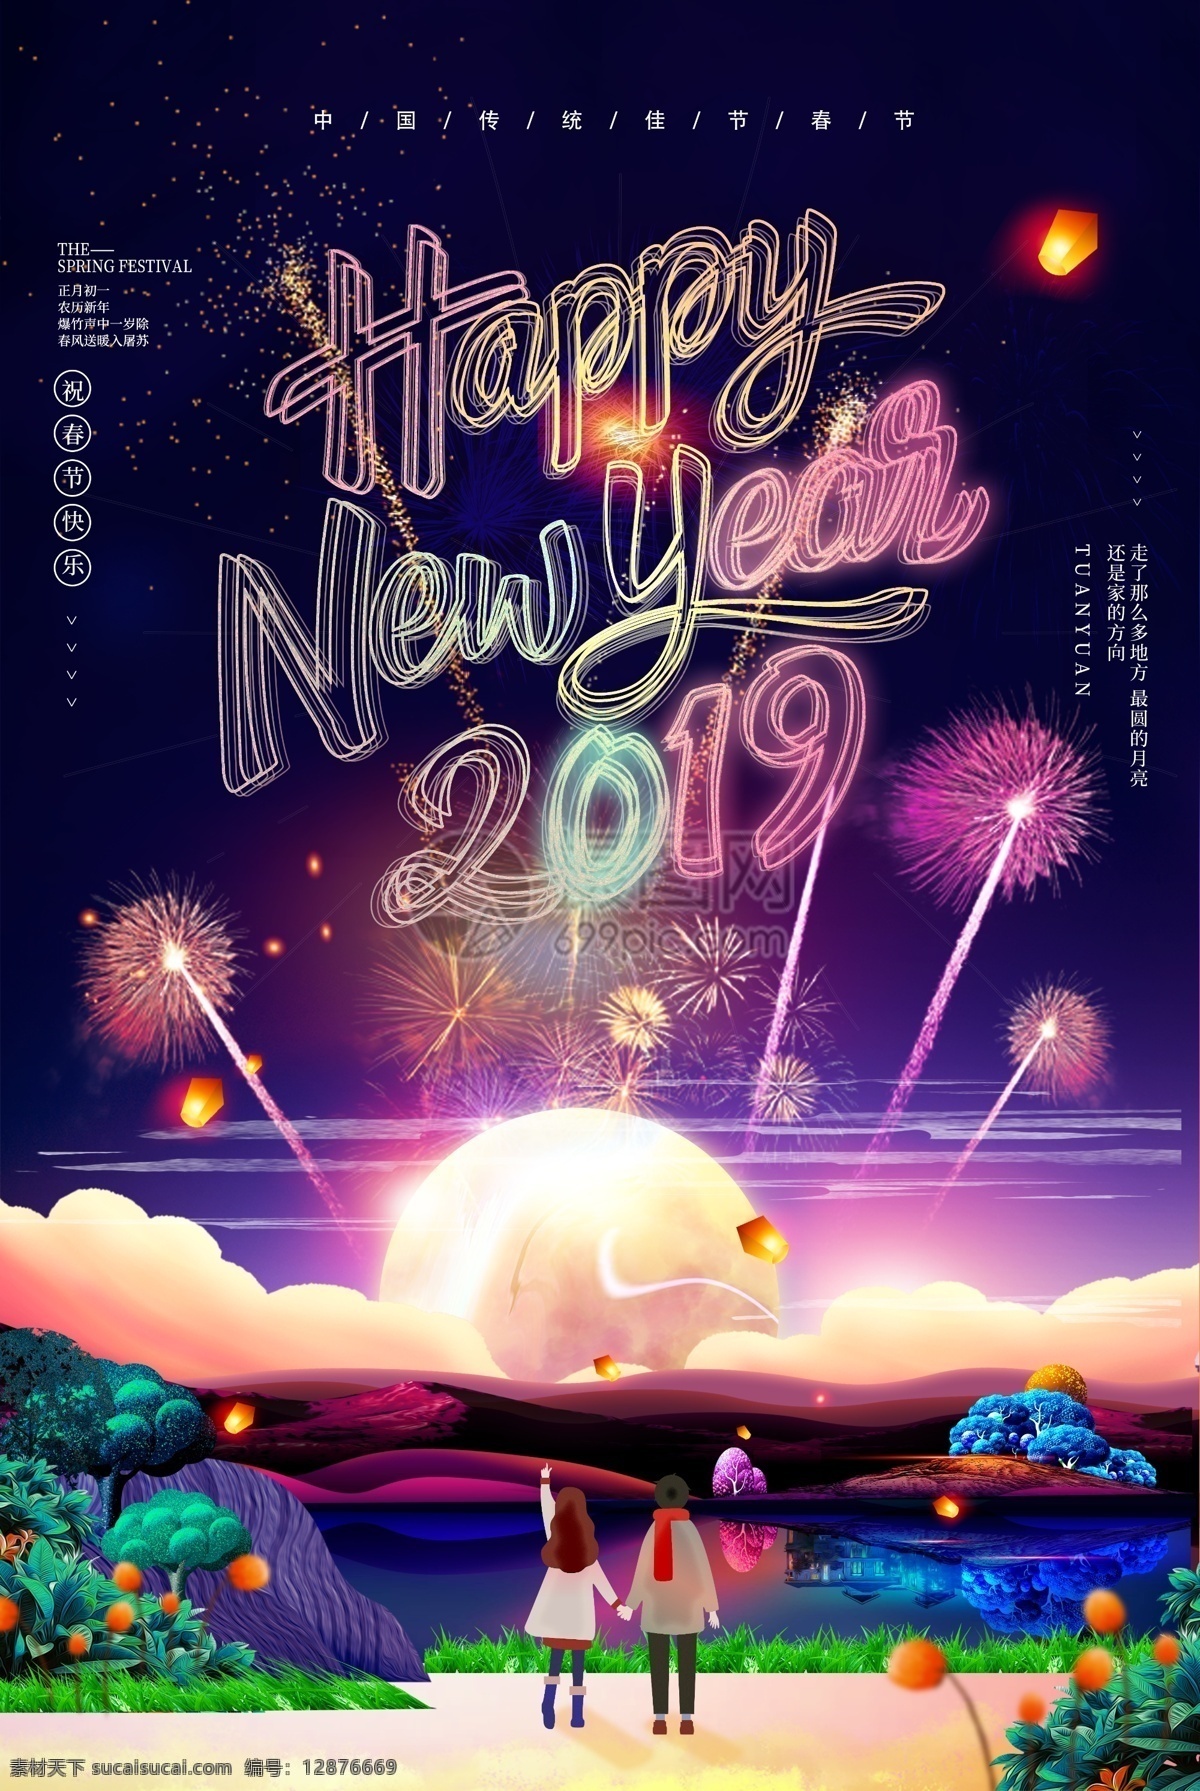 唯美 浪漫 2019 新年 海报 新年快乐 happynewyear 烟花 猪年 元旦 春节 过年 幸福中国年 陪你过你